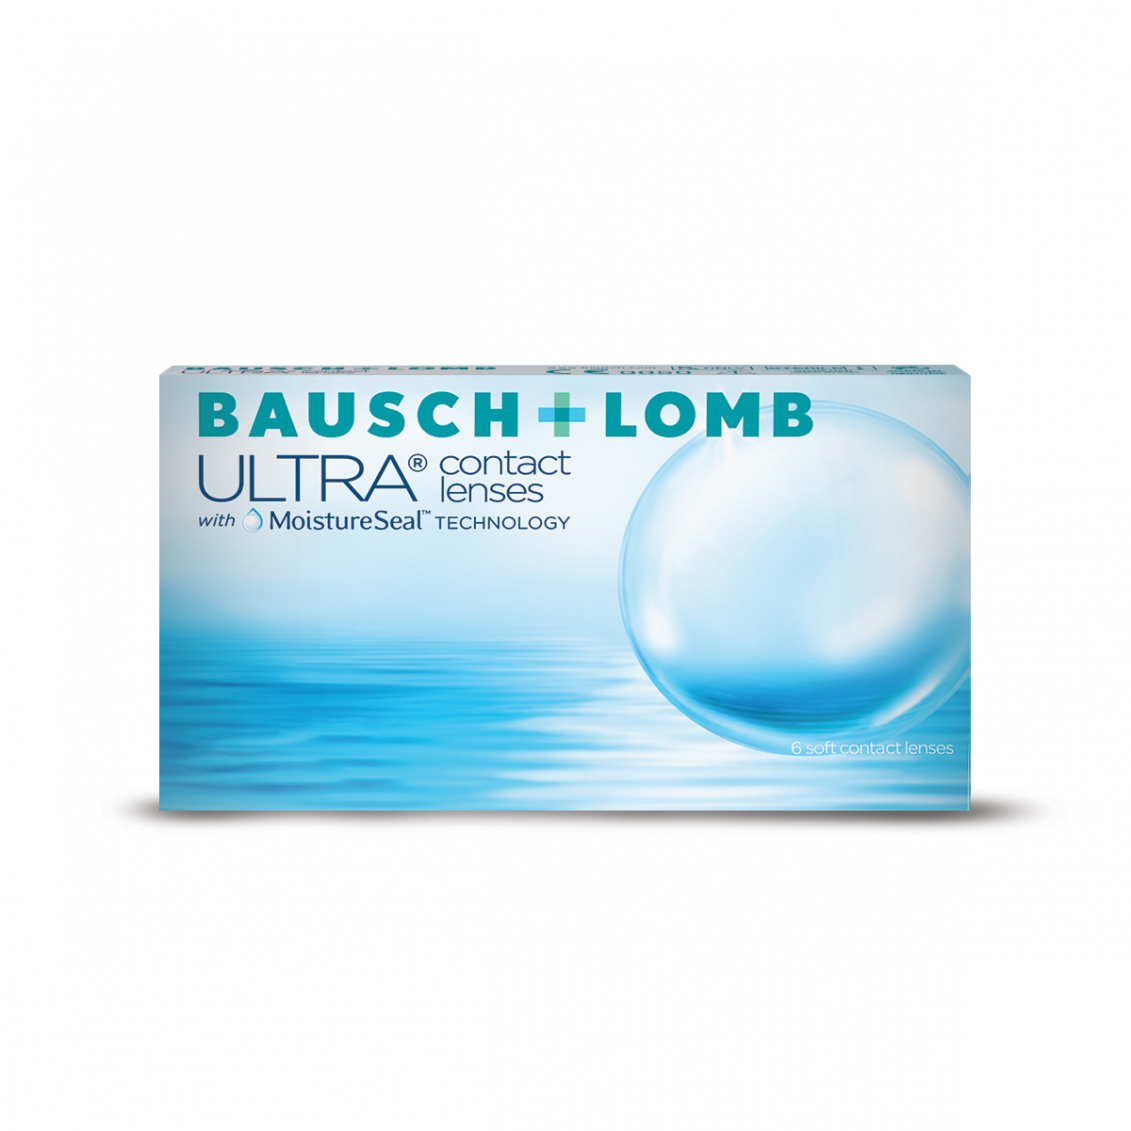 BAUSCH + LOMB ULTRA